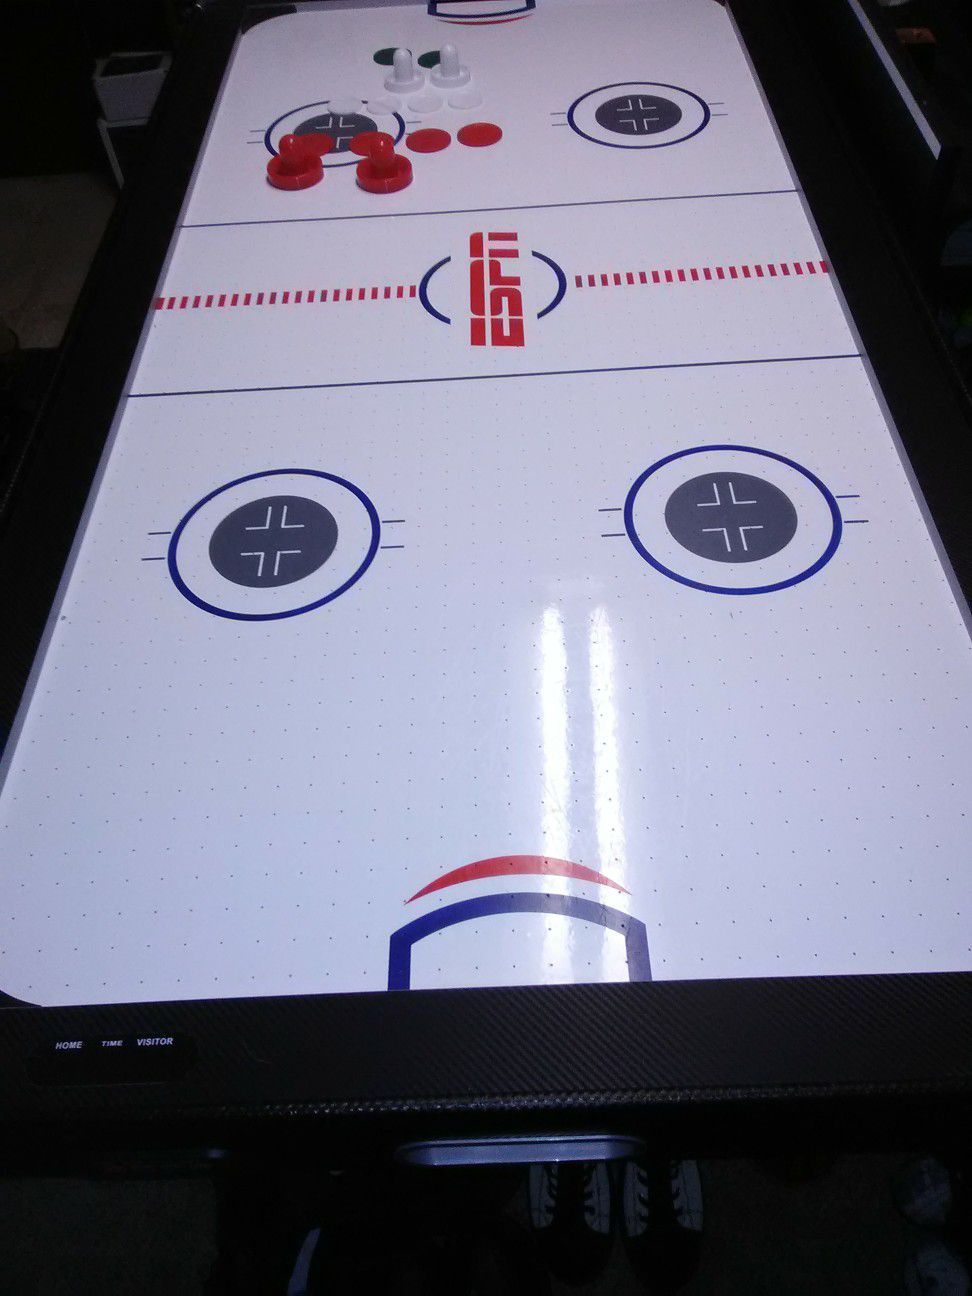 Espn air hockey table